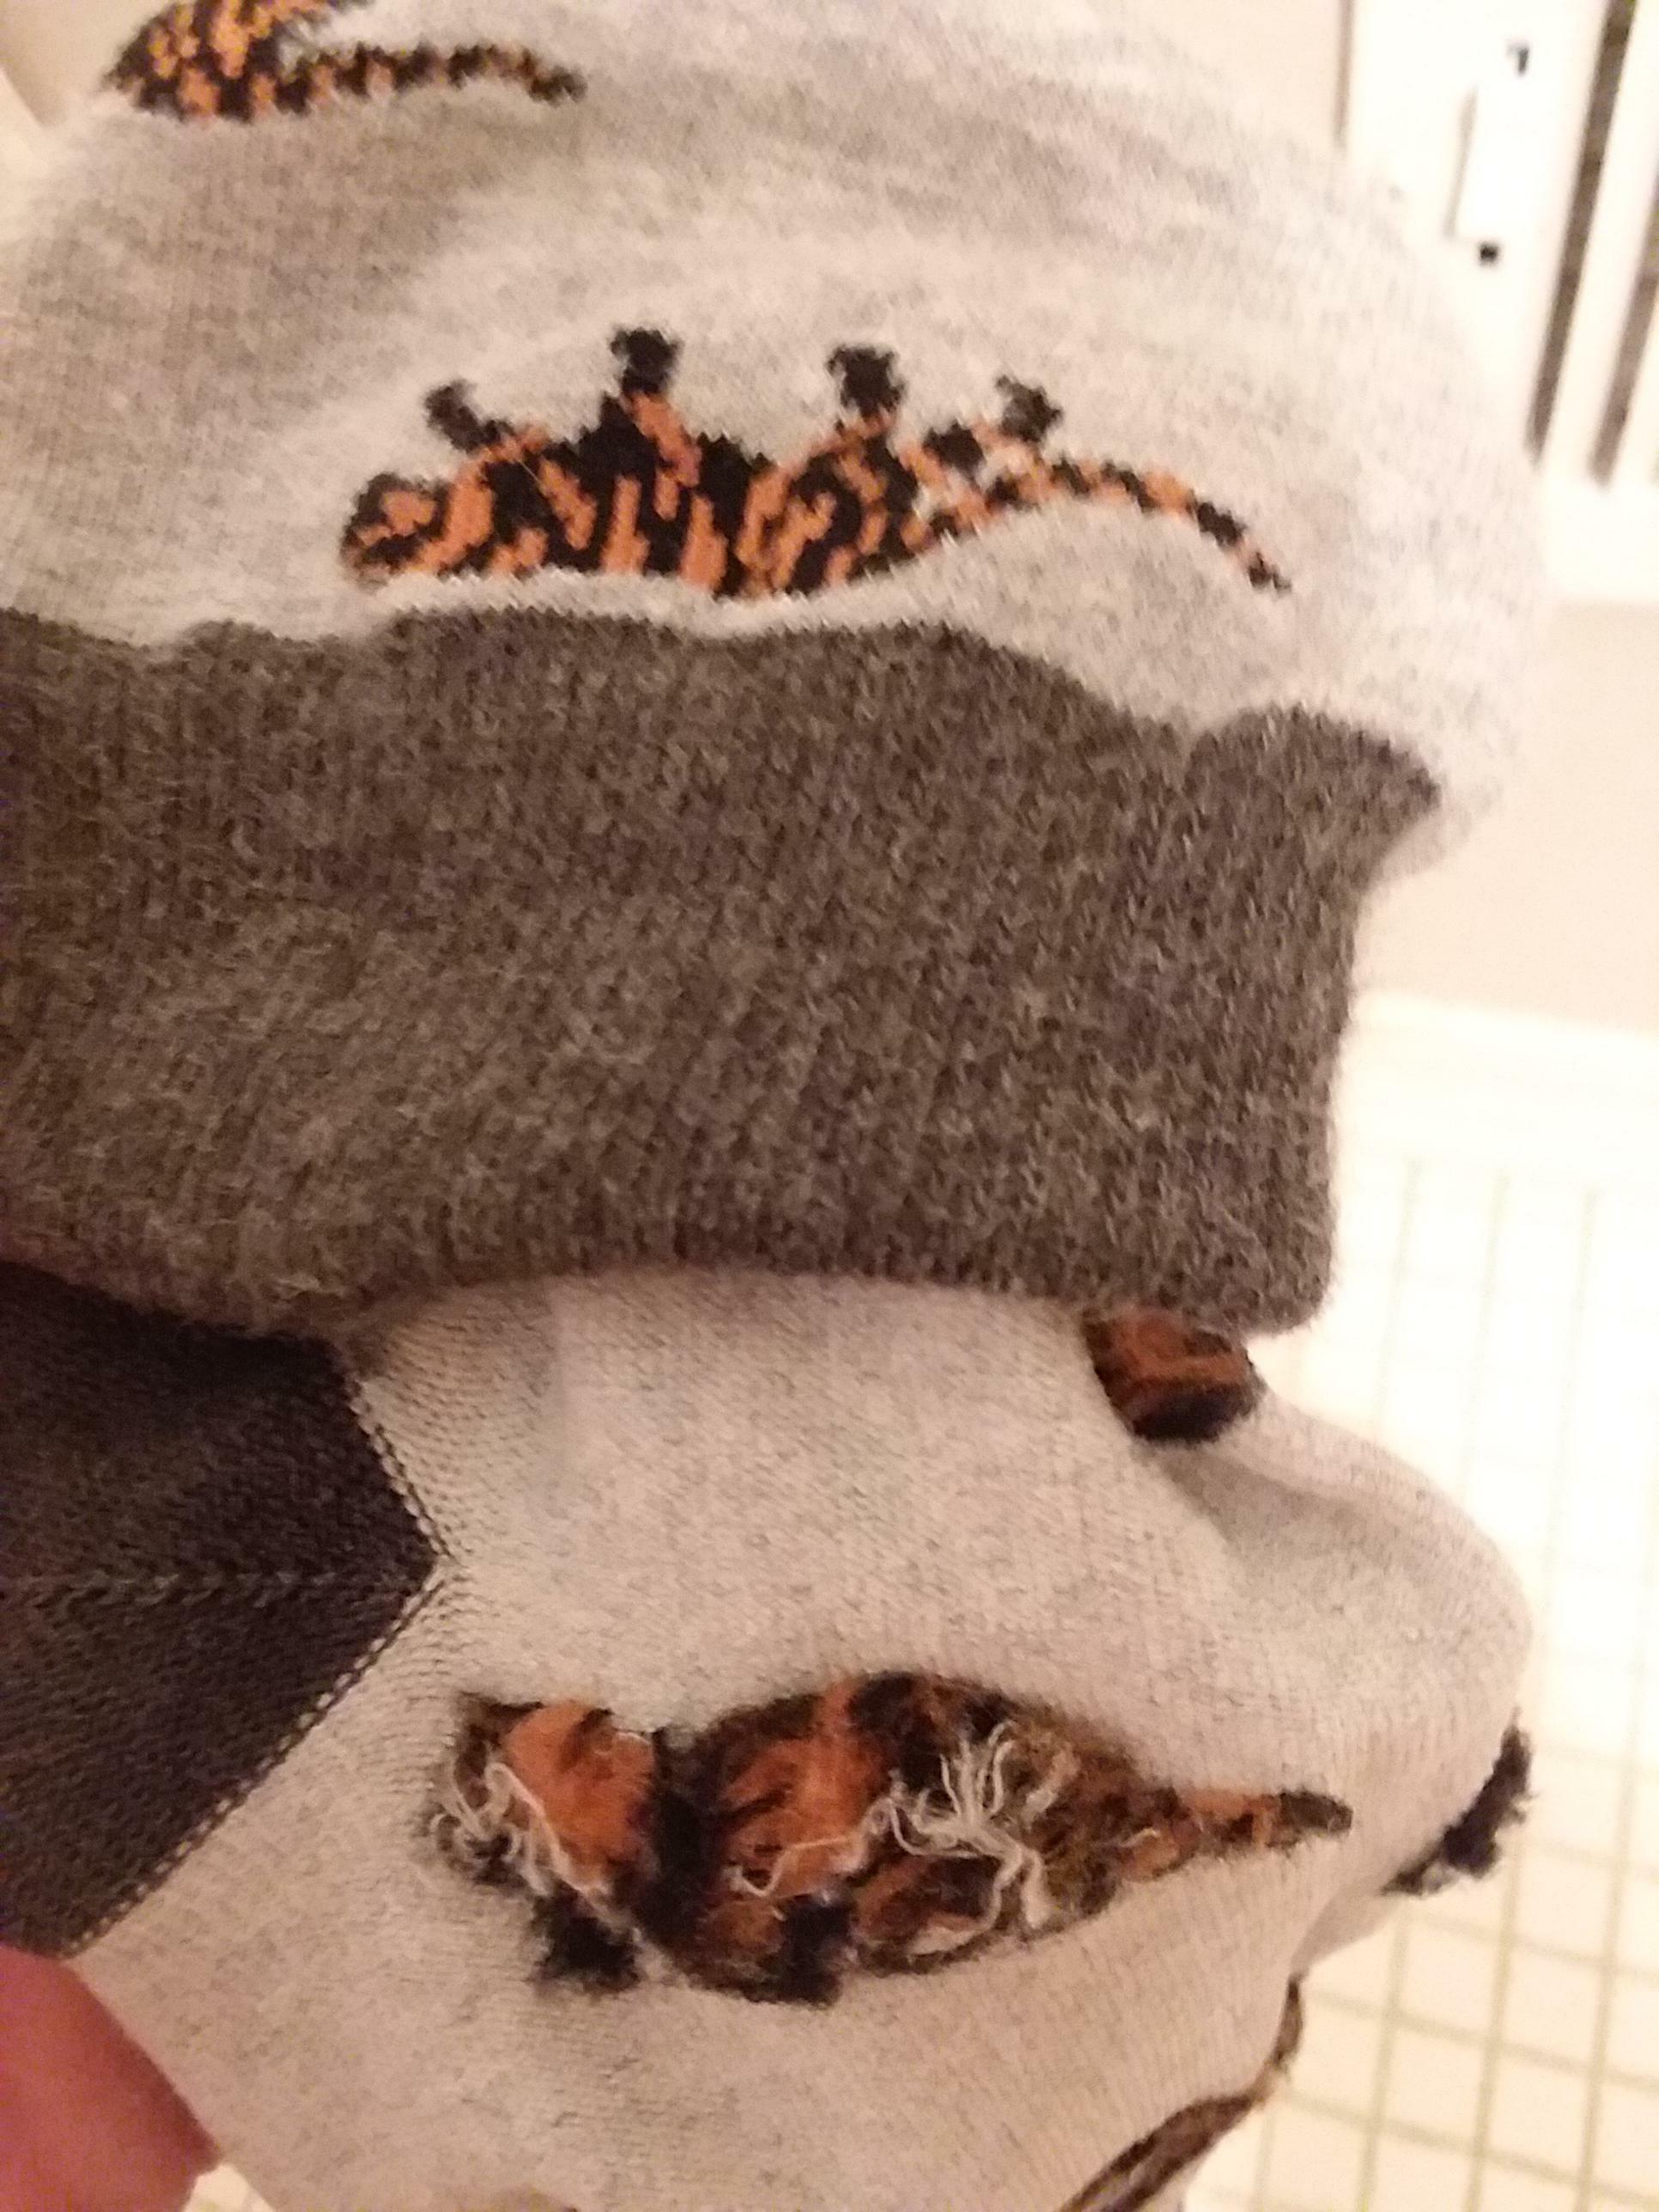 Les tigres sur ces chaussettes ressemblent à des chats domestiques lorsqu'ils sont retournés.